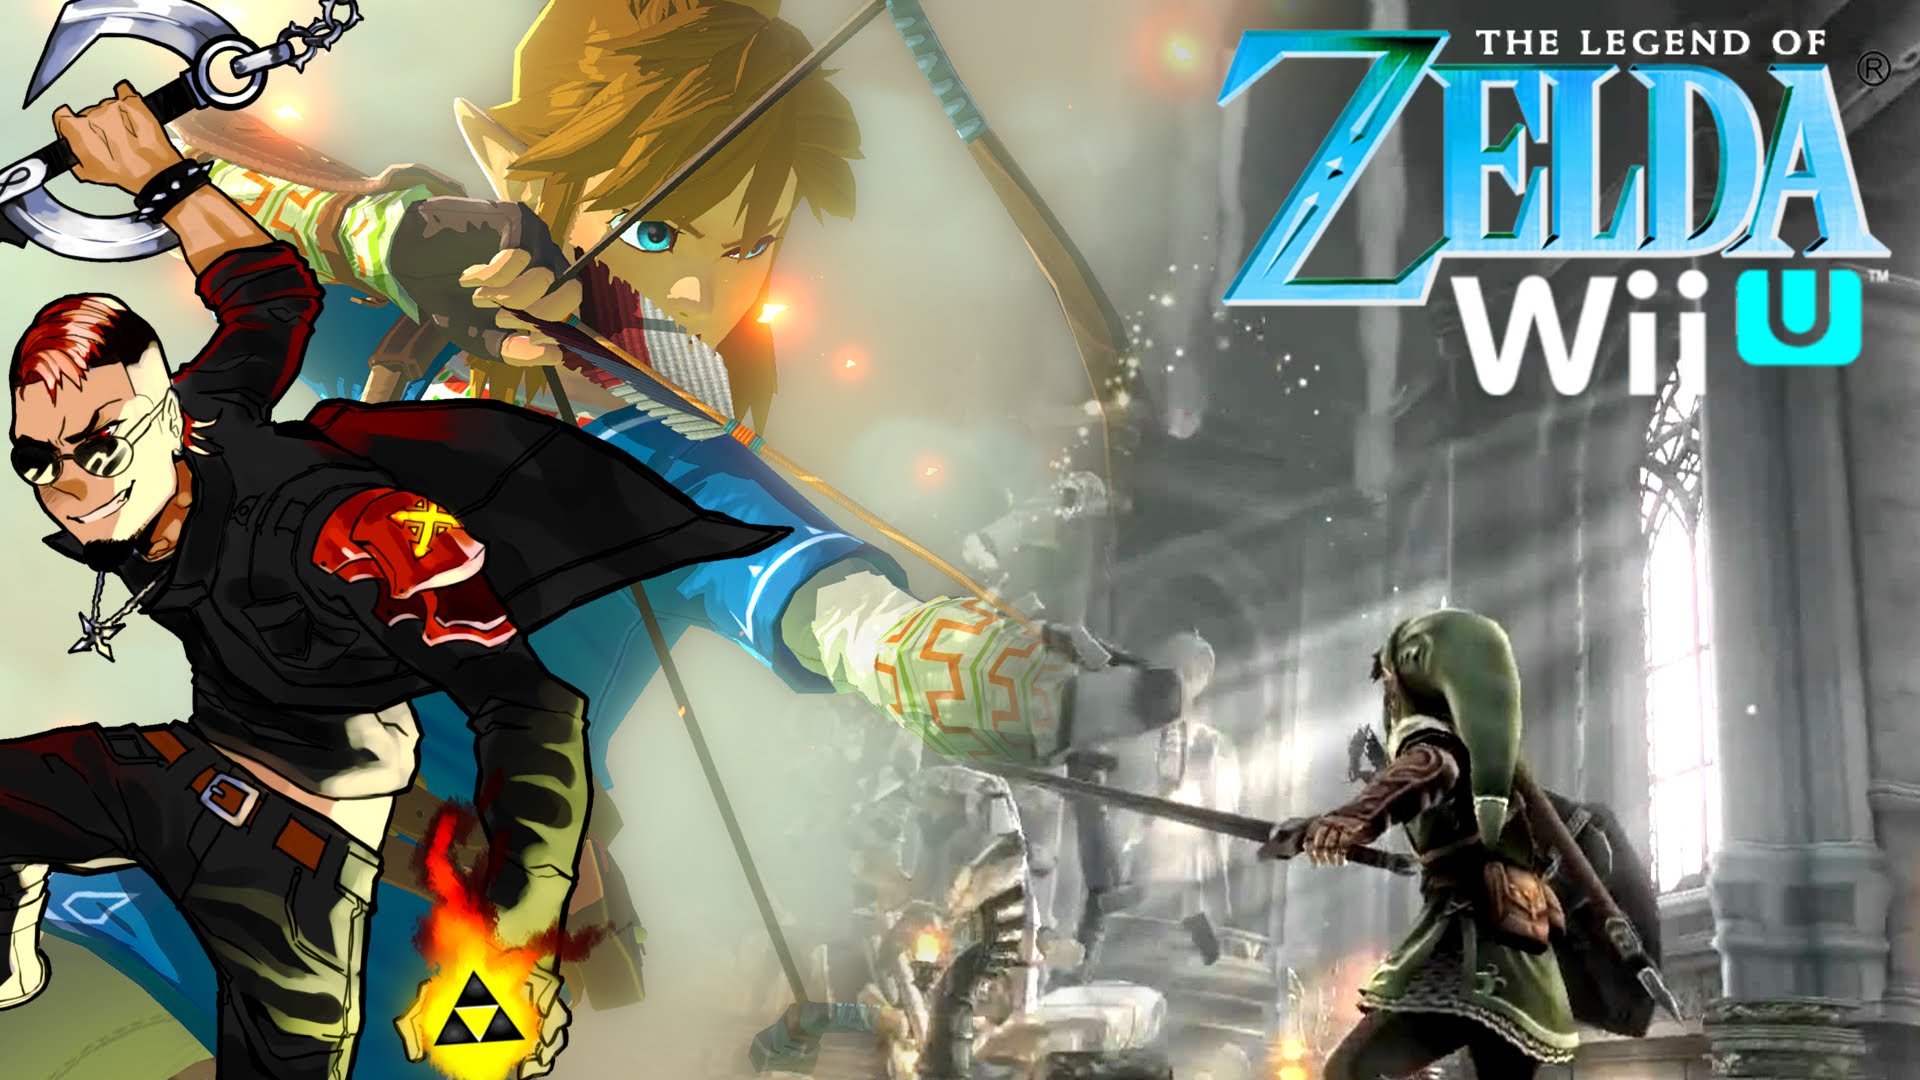 Zelda-themed Wii U hardware appears in The Wind Waker HD 'Hero